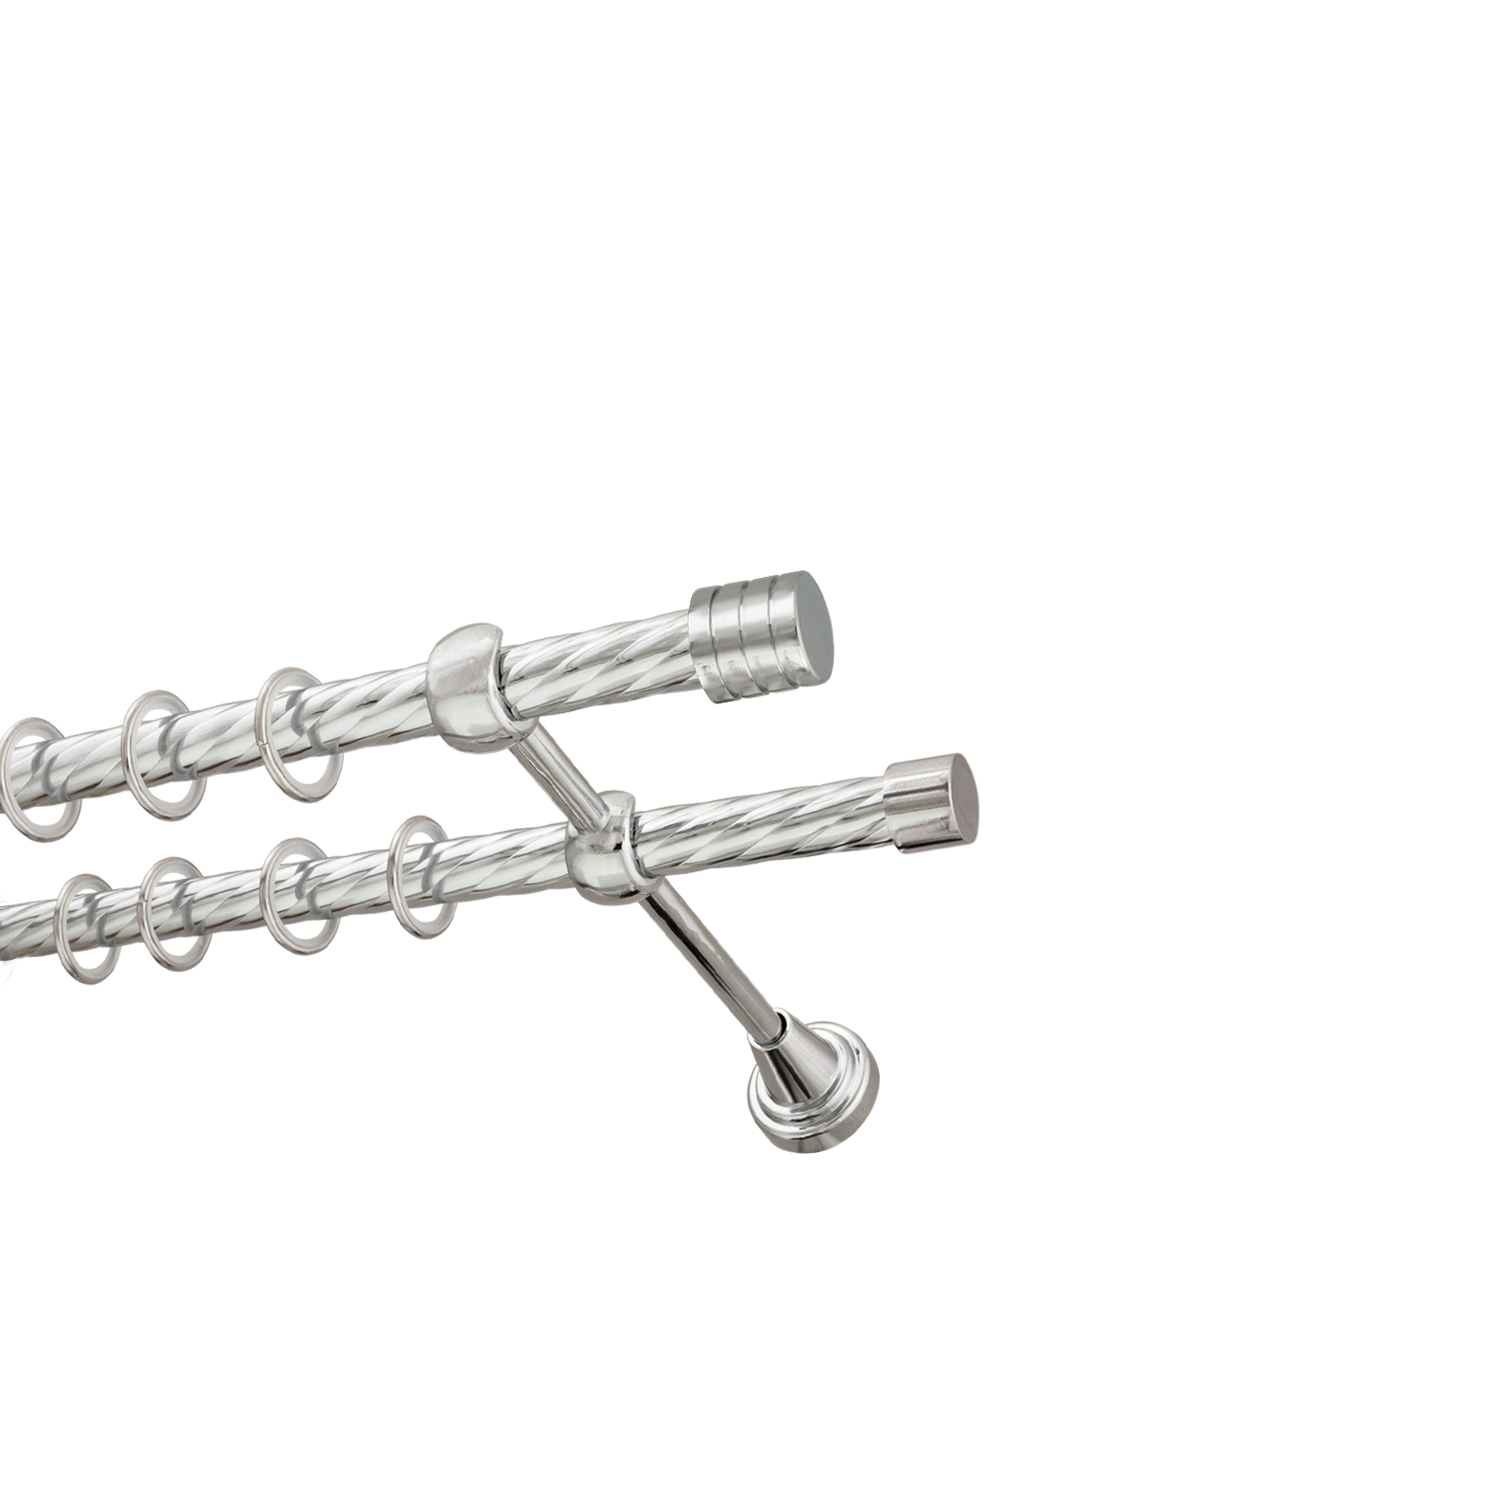 Металлический карниз для штор Подиум, двухрядный 16/16 мм, серебро, витая штанга, длина 160 см - фото Wikidecor.ru